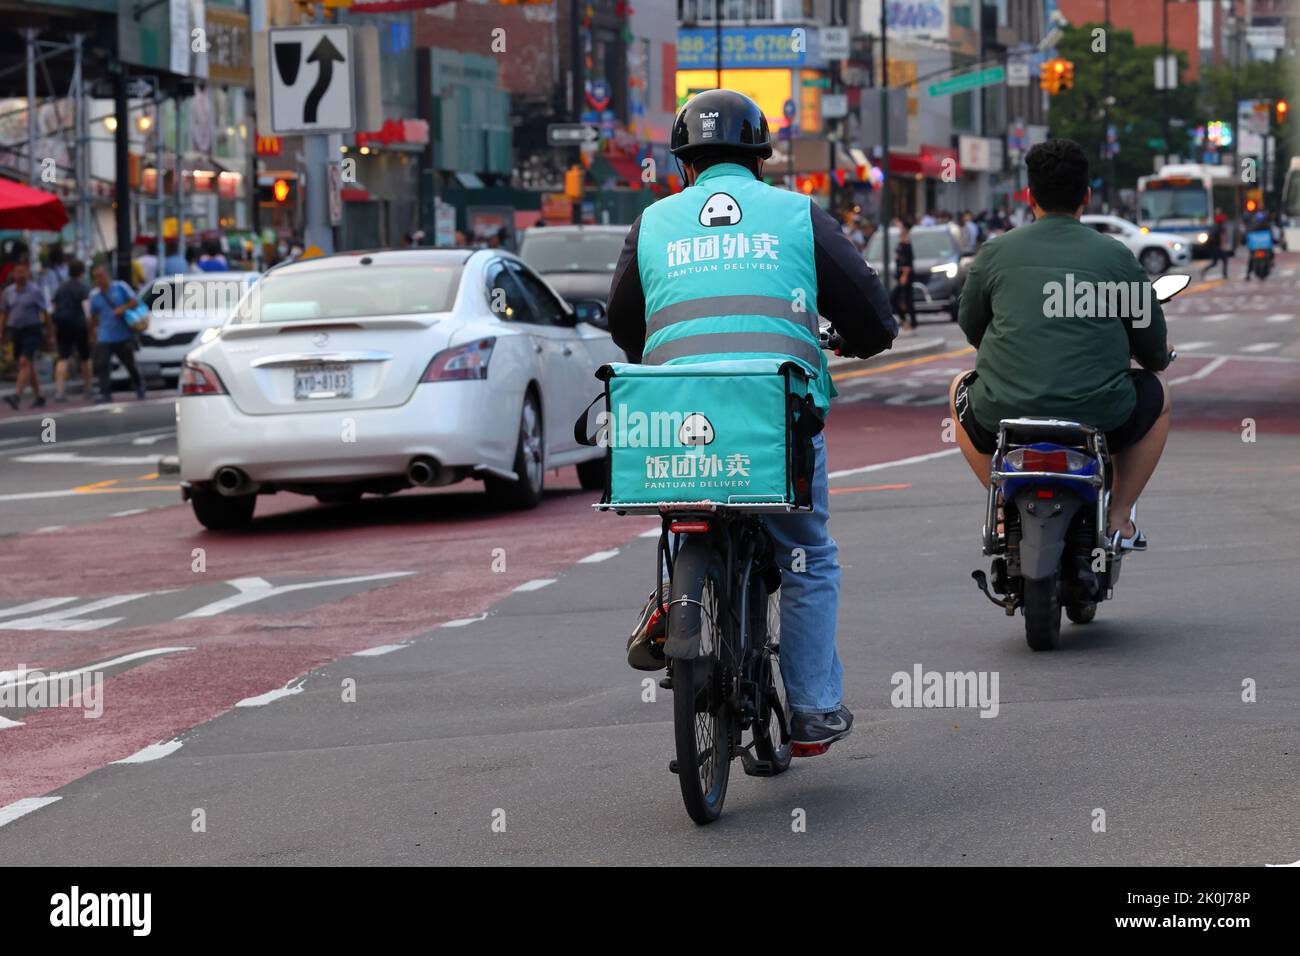 Eine fantuanische Lieferperson auf einem E-Bike in Downtown Flushing, New York. Fantuan 飯糰外賣 Lieferung asiatischer Speisen Stockfoto